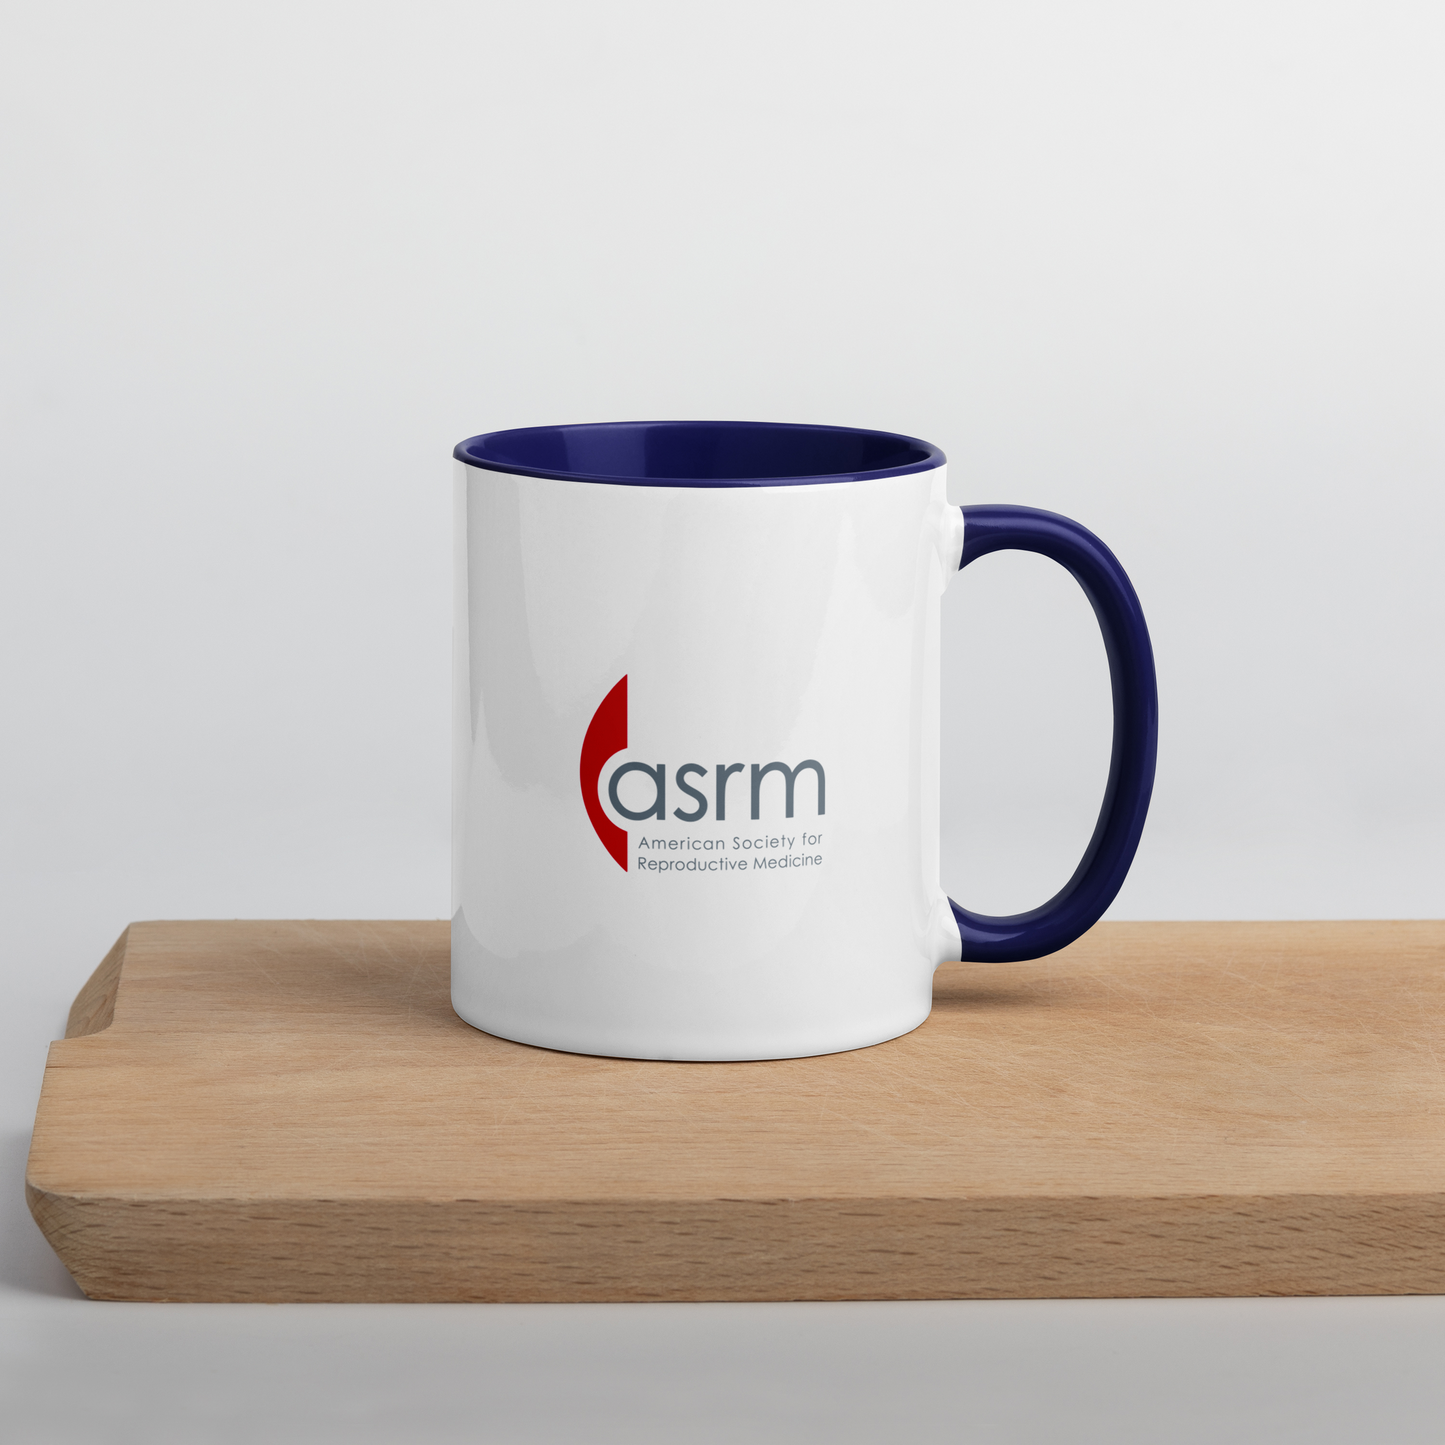 ASRM Logo Mug Modeled In Context